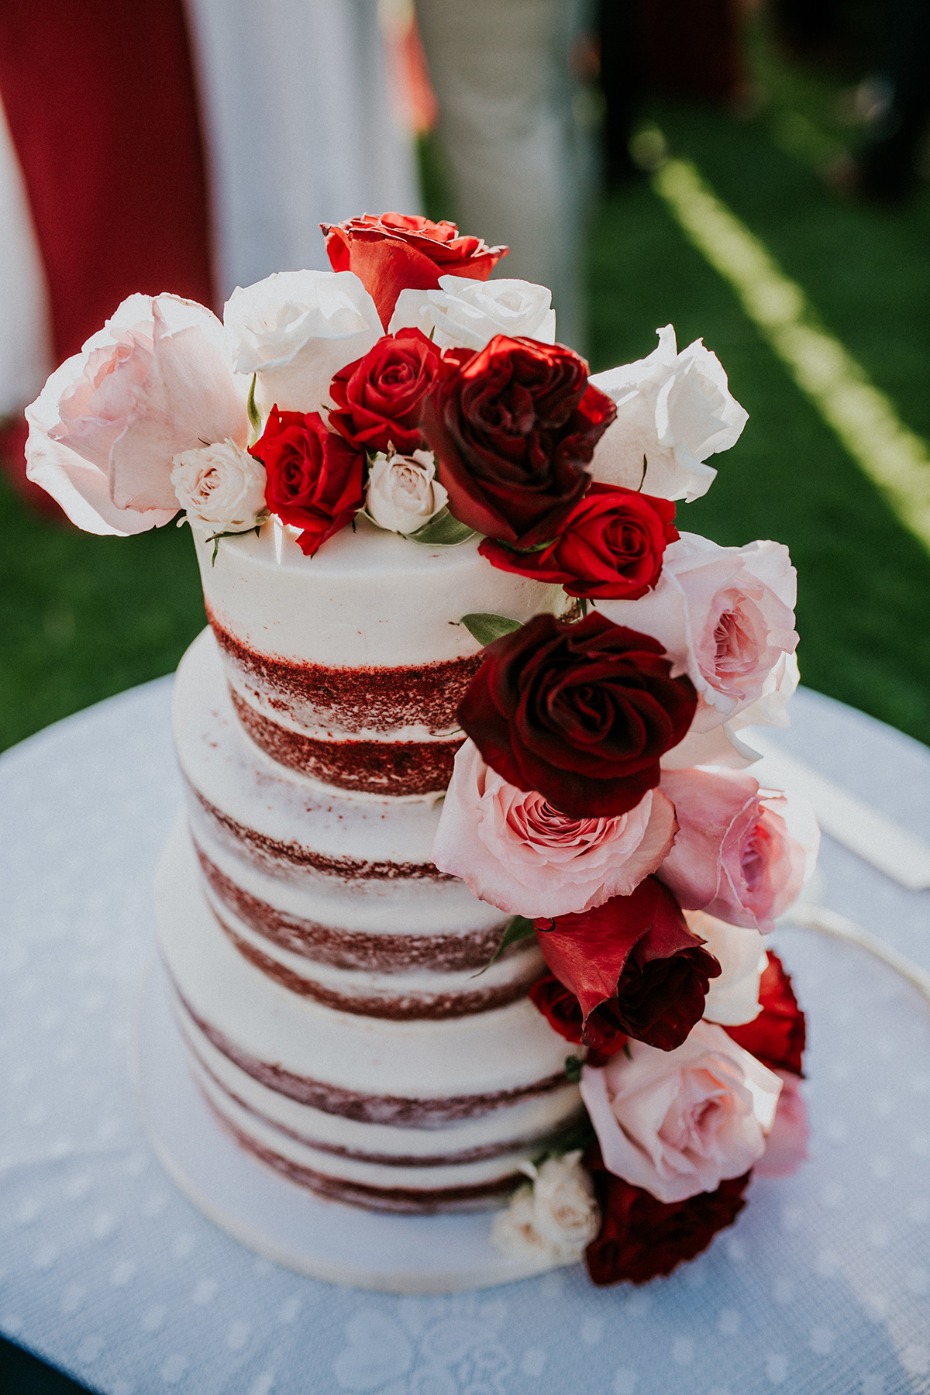 Red velvet naked cake with roses